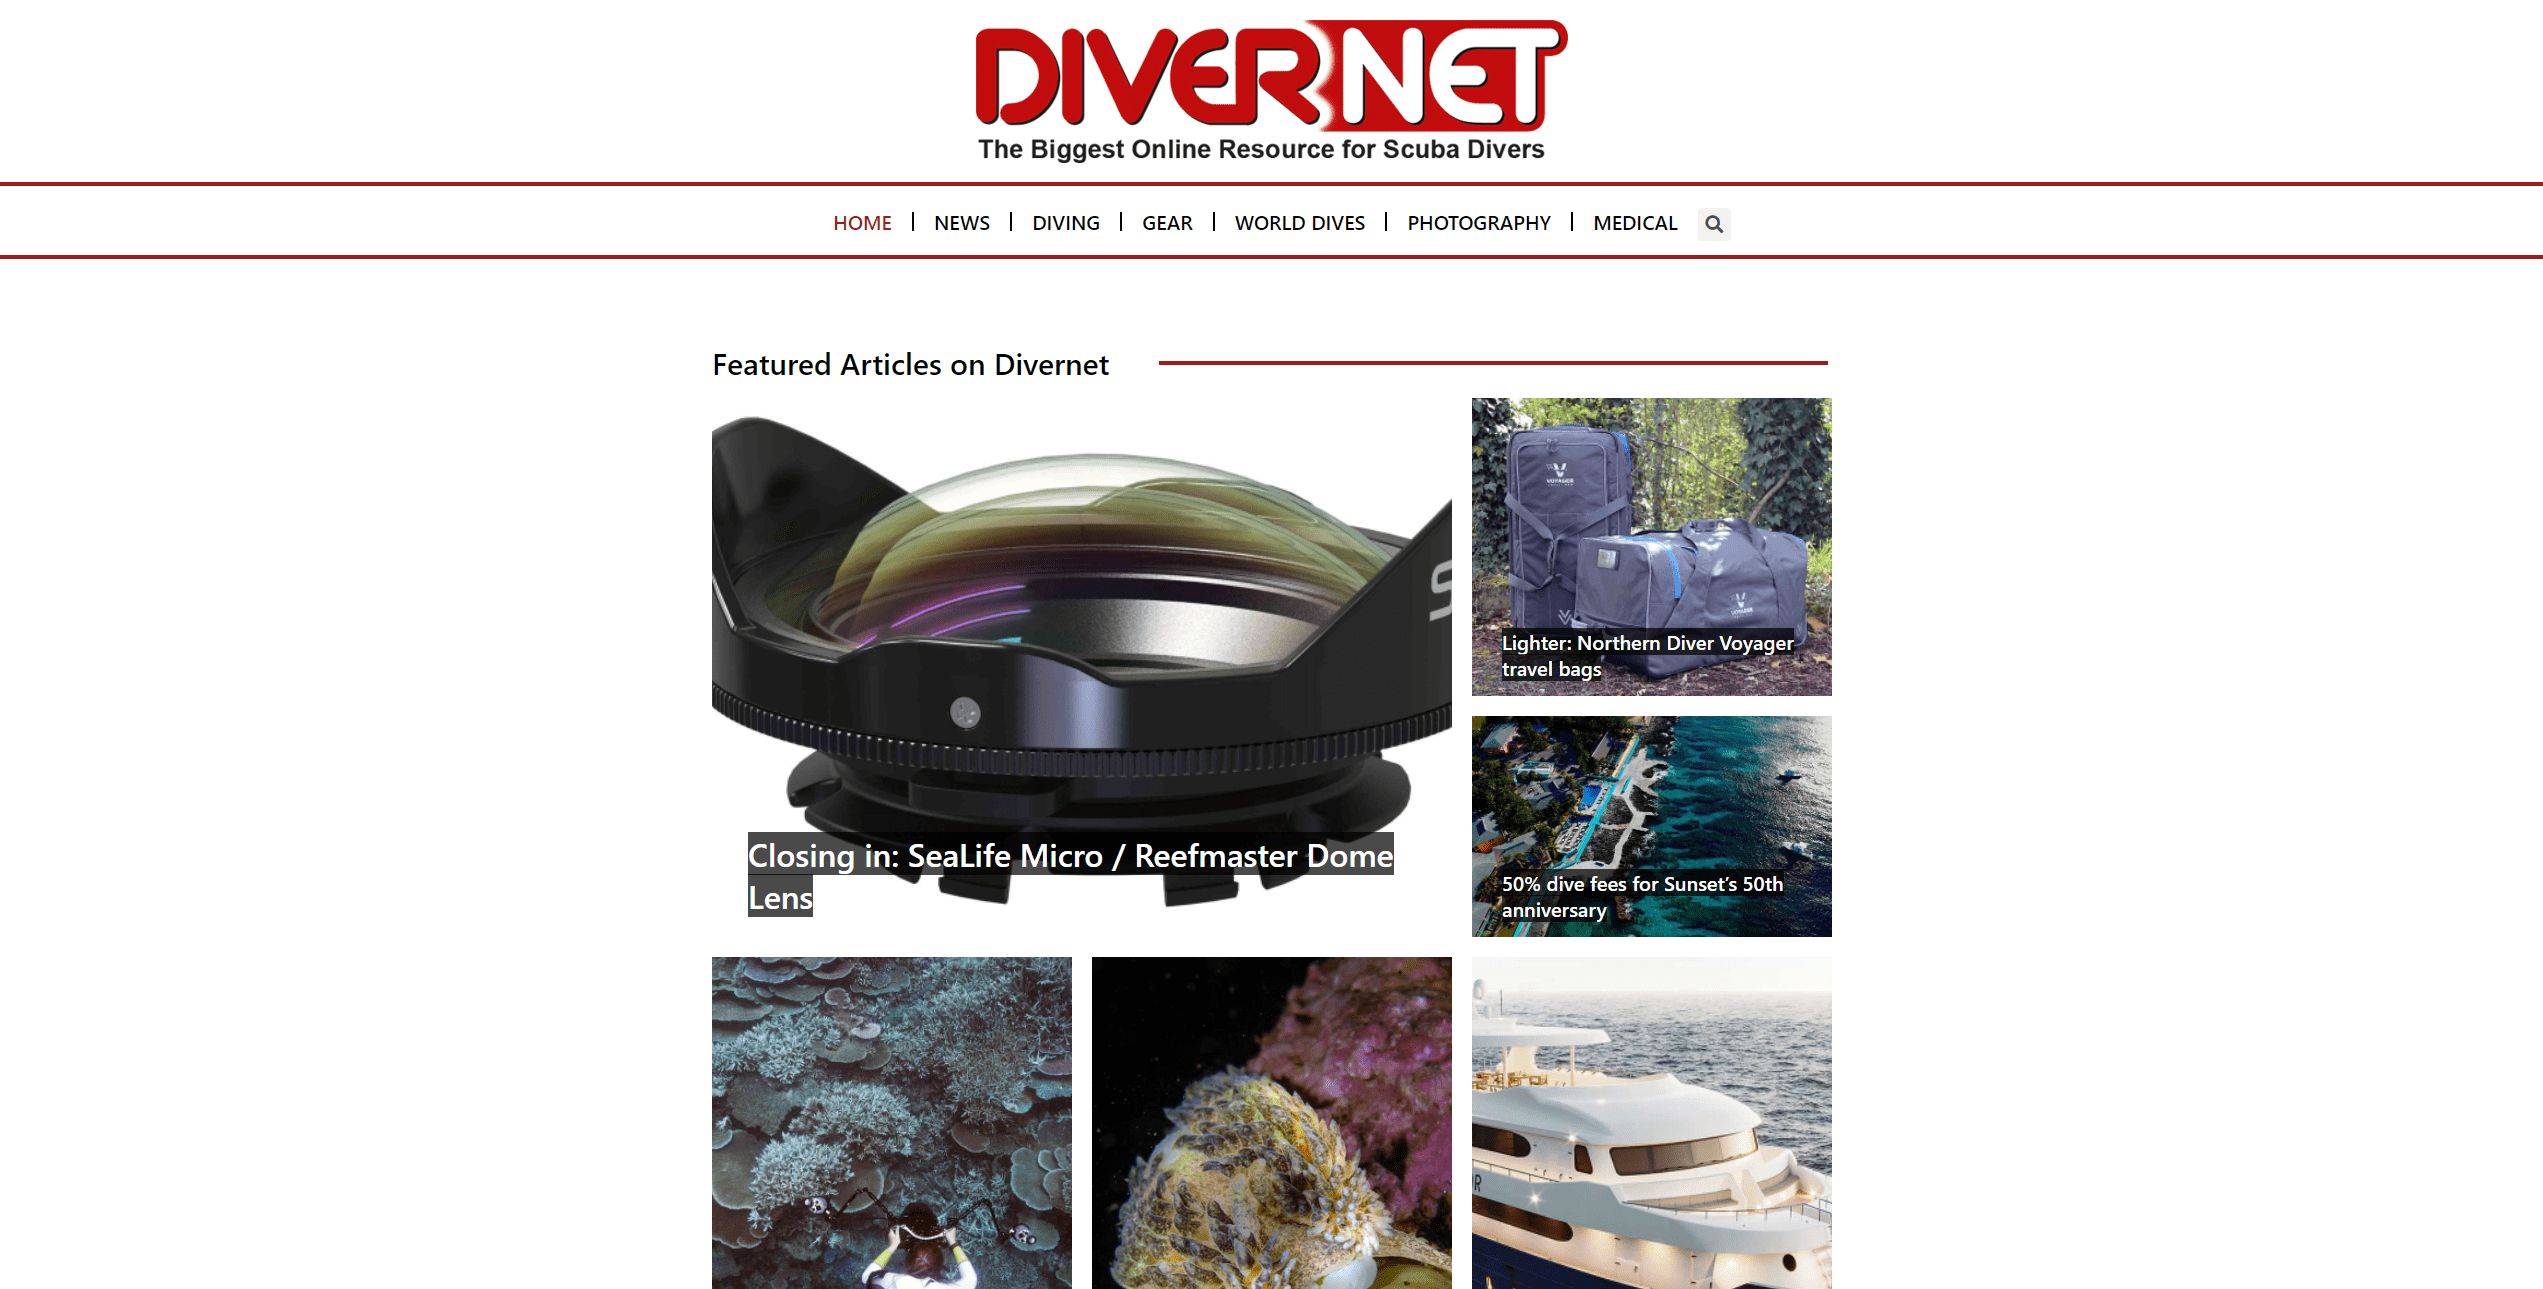 Divernet Scuba Diving Scuba News Scuba Gear Underwater Photography Divernet